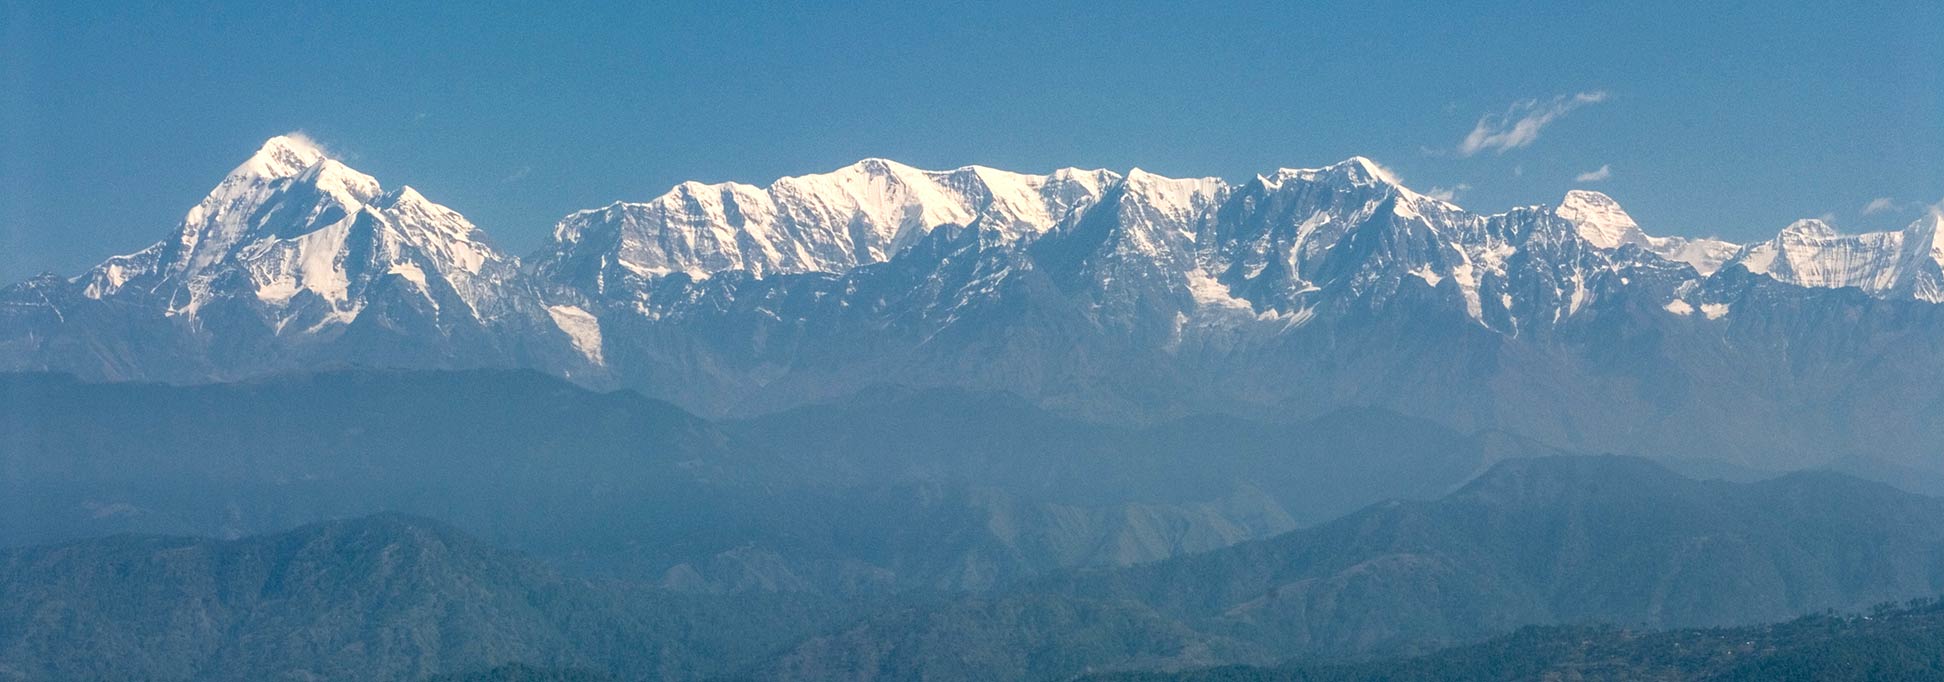 Trishul and Nanda Devi and the Himalayan mountain range